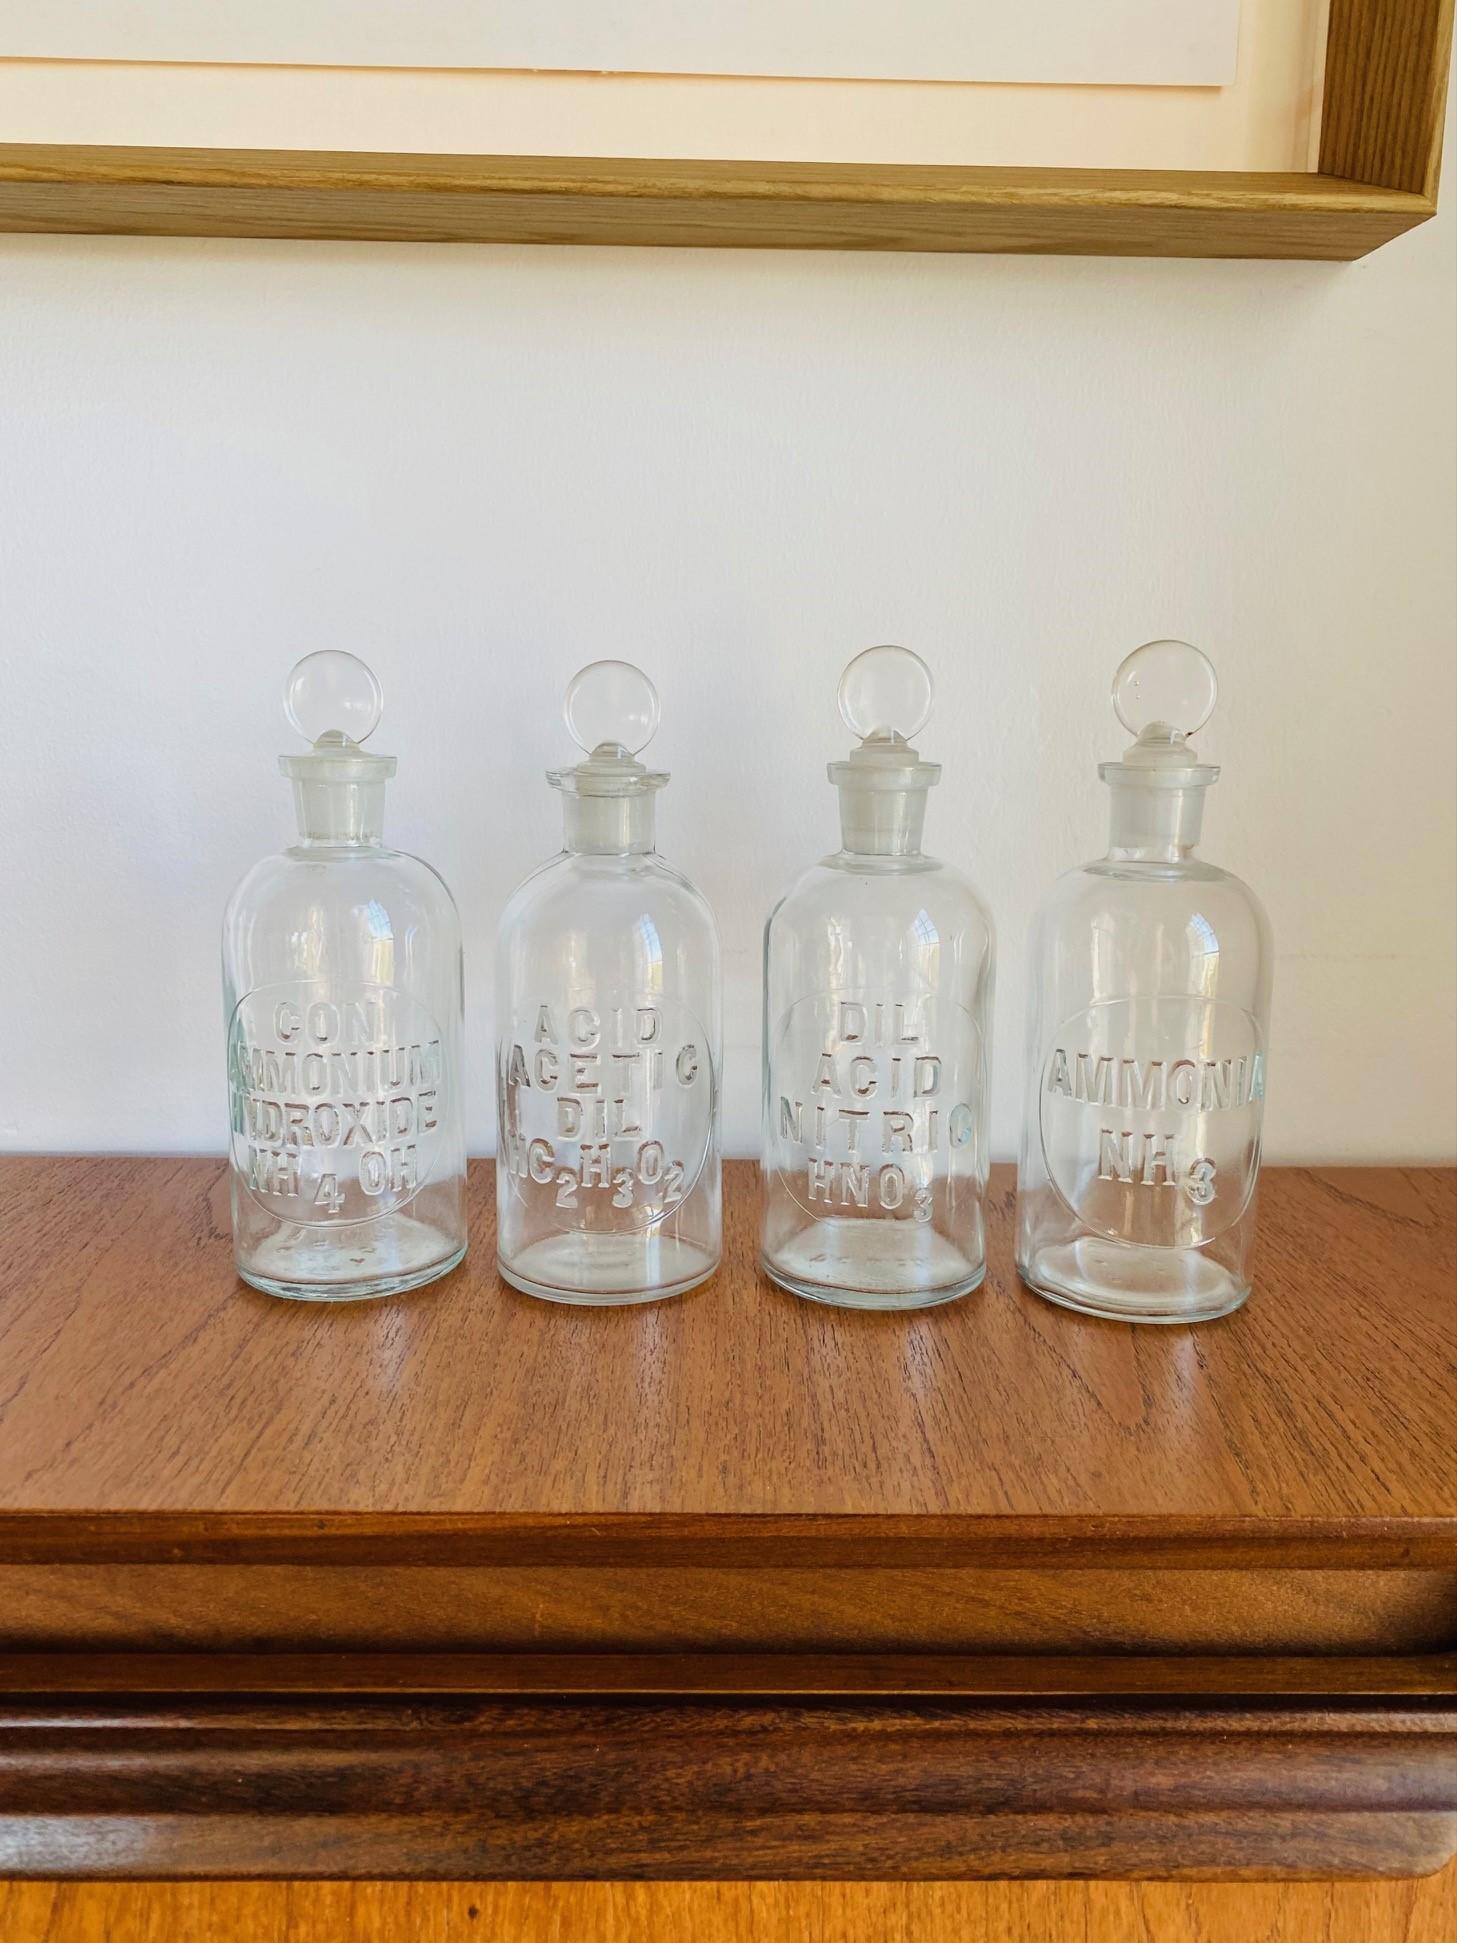 Schöne Satz von 4 Vintage-Apotheke Flaschen mit Stopfen und geprägt.  Klassisch und einzigartig, glänzen diese schönen Flaschen aus Vintage-Glas mit Schönheit und Form.  Die klassische Flaschen- und Korkenform verleiht diesen Stücken eine